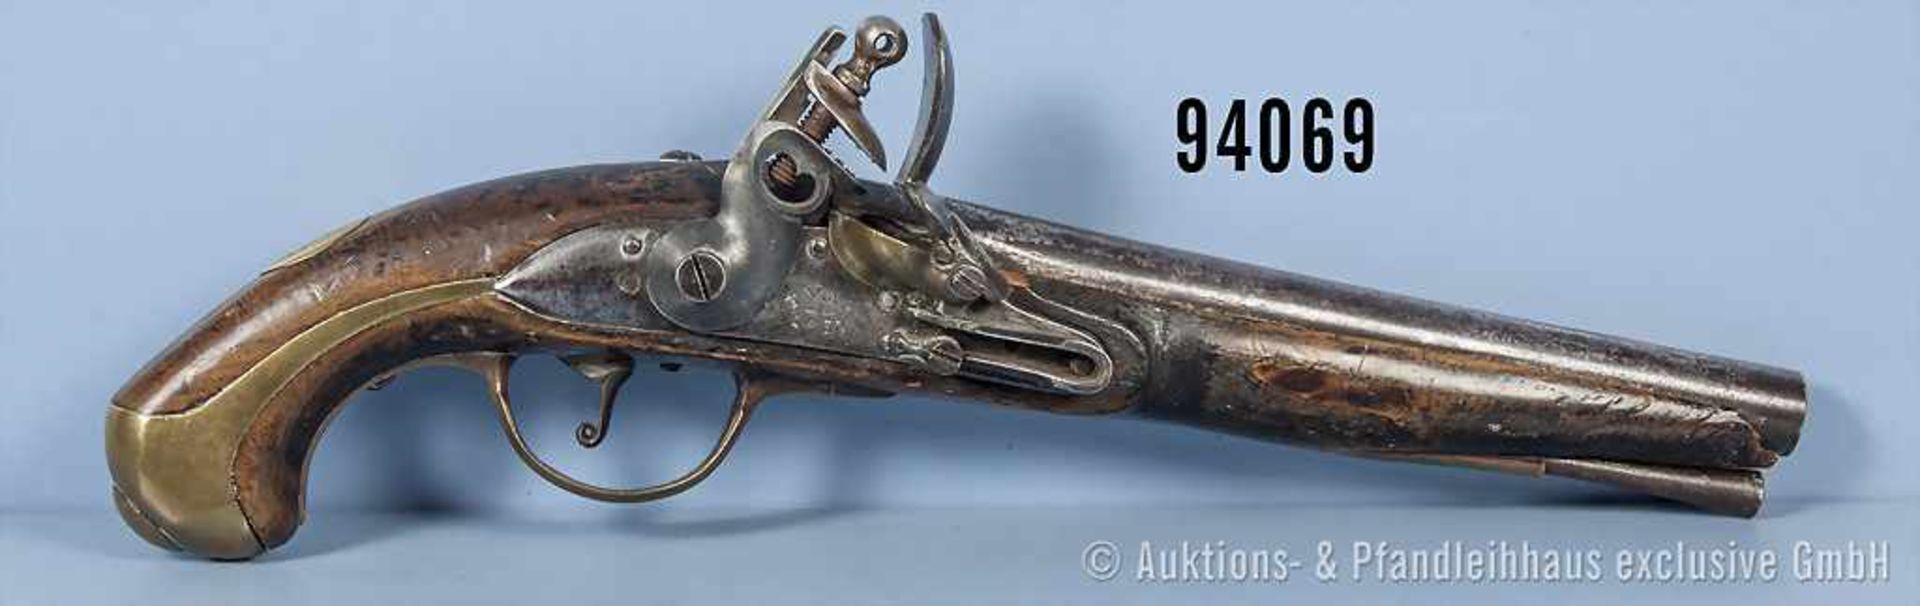 Russland Steinschloßpistole, Jahreszahl "1833" auf der Schloßplatte, mit Ladestock, Schaft teilweise